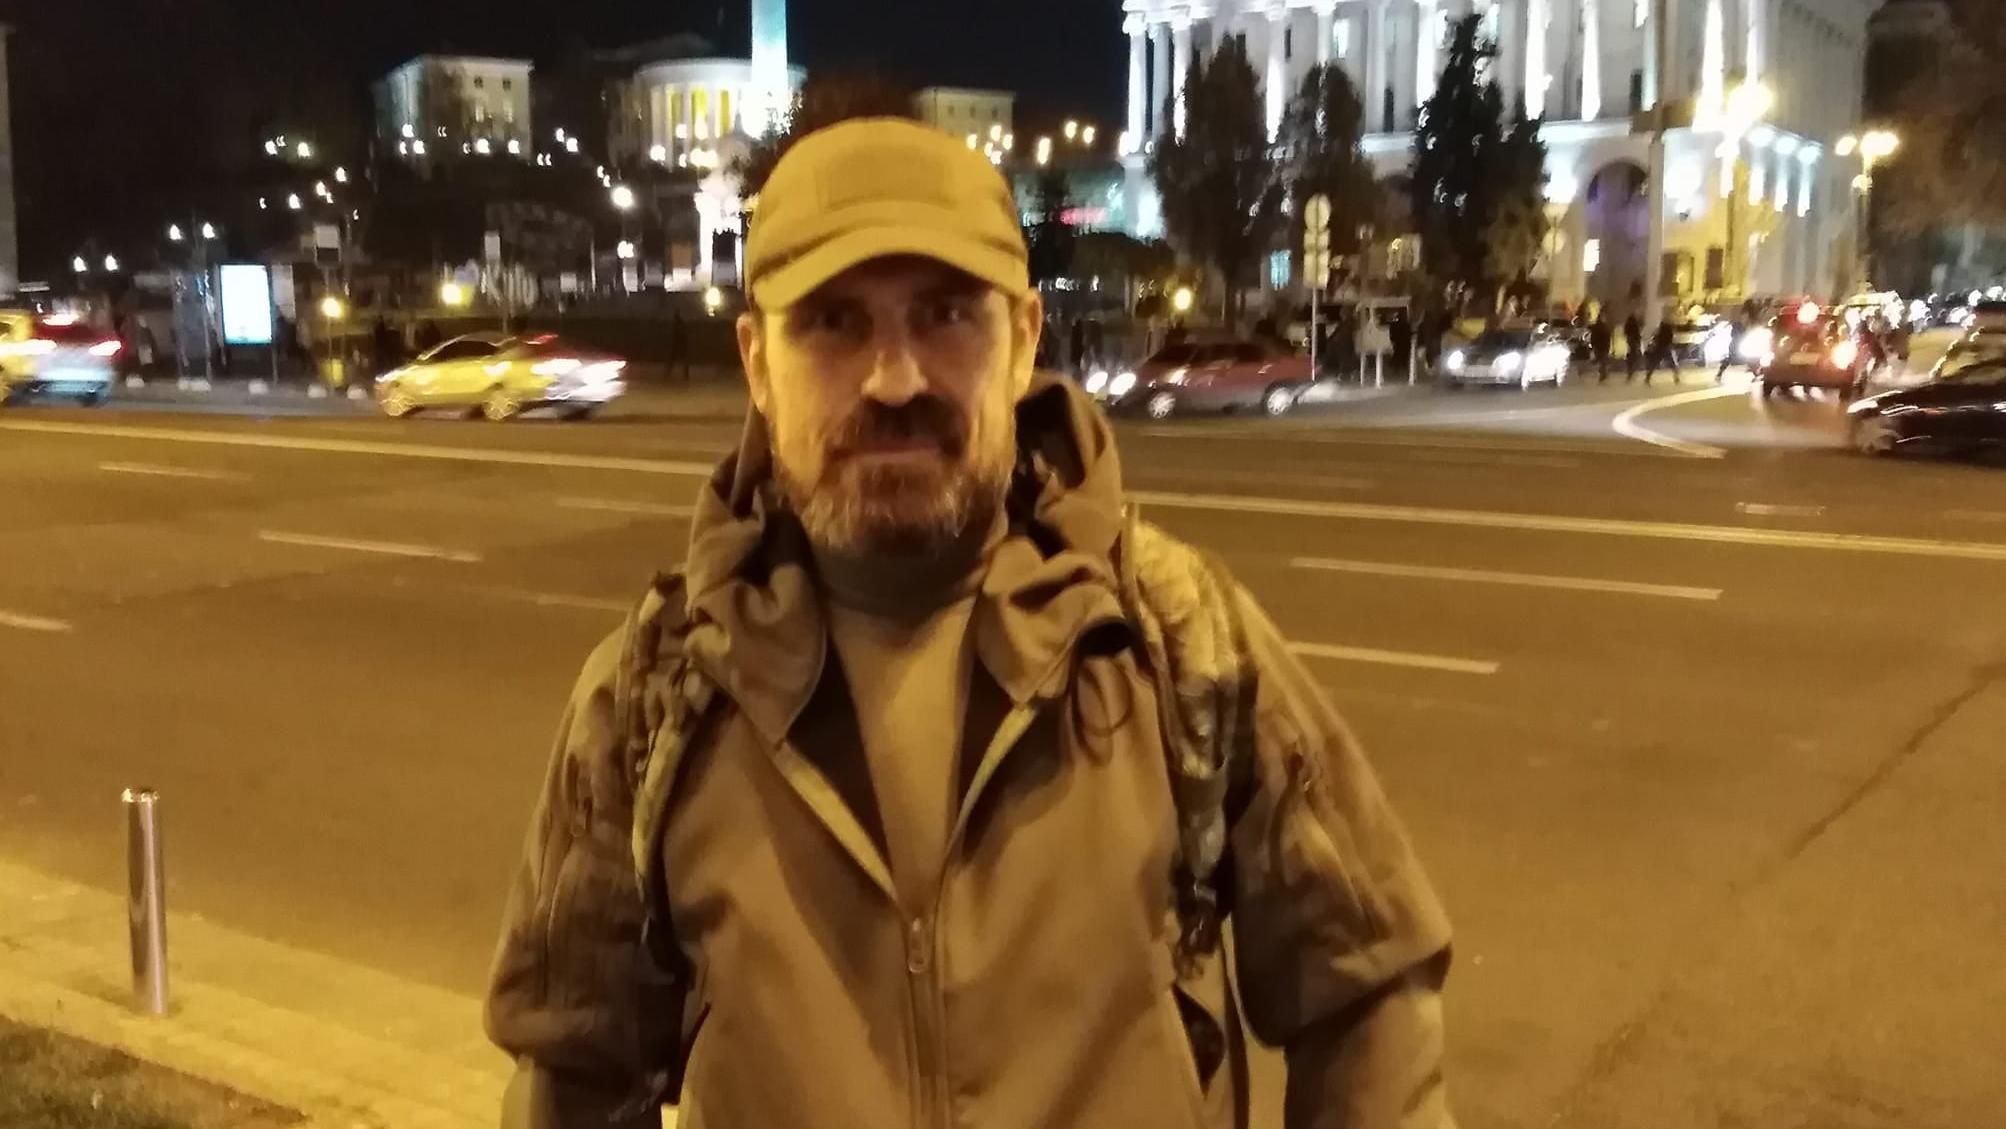 Фронтовик ООС Микитенко поджег себя на Майдане в Киеве: каковы его мотивы, что известно о состоянии